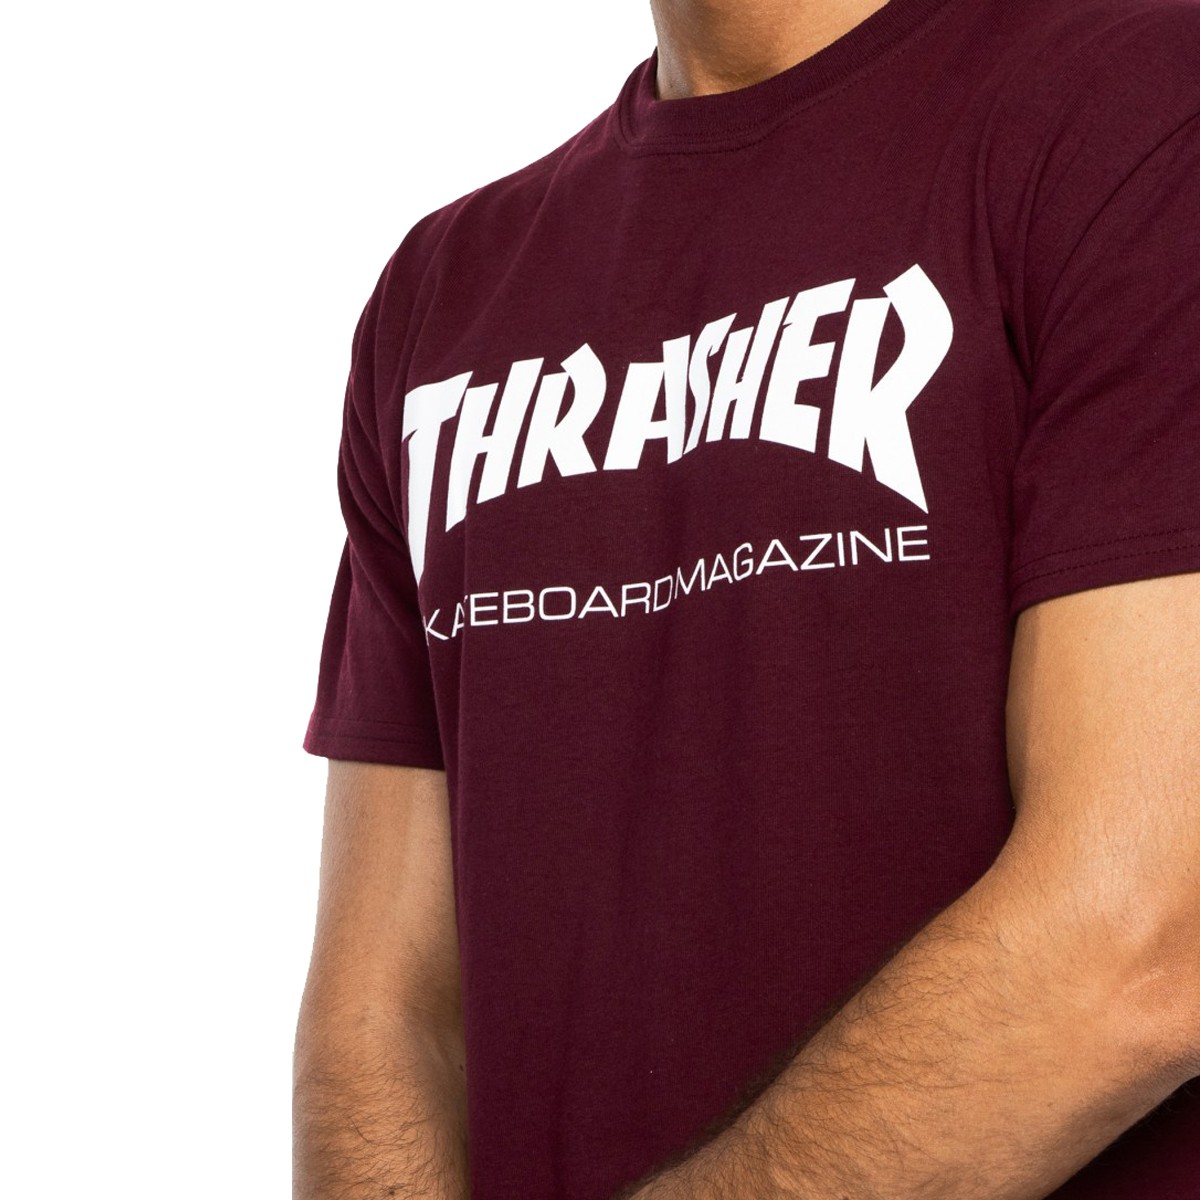 Thrasher Skate Mag Maroon T-Shirt 110295